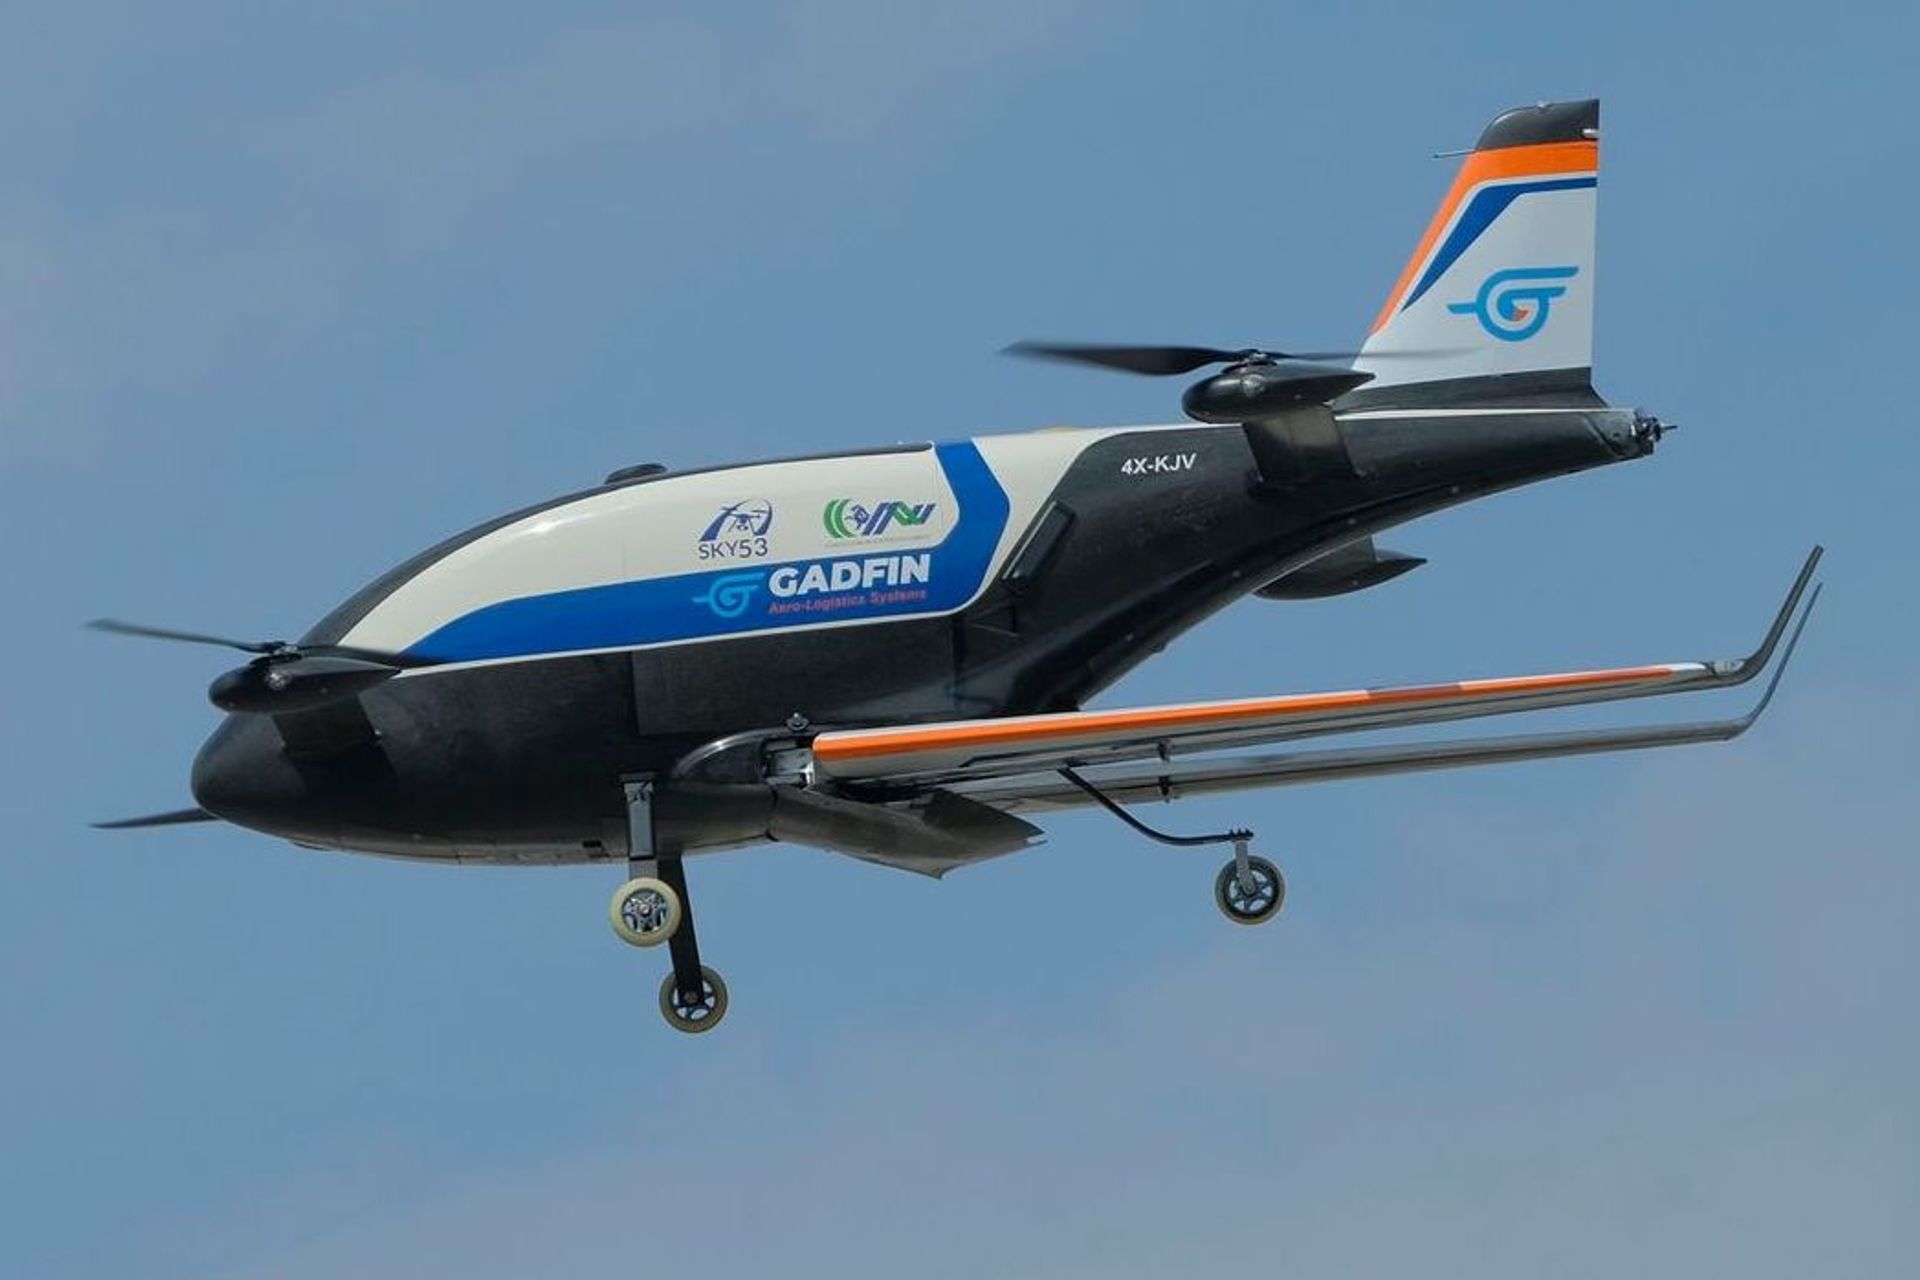 La dimostrazione del drone per trasporto di materiale sanitario del progetto “Sky 53”, effettuato nelle aree esterne del quartiere fieristico di Verona dall’operatore israeliano Gadfin